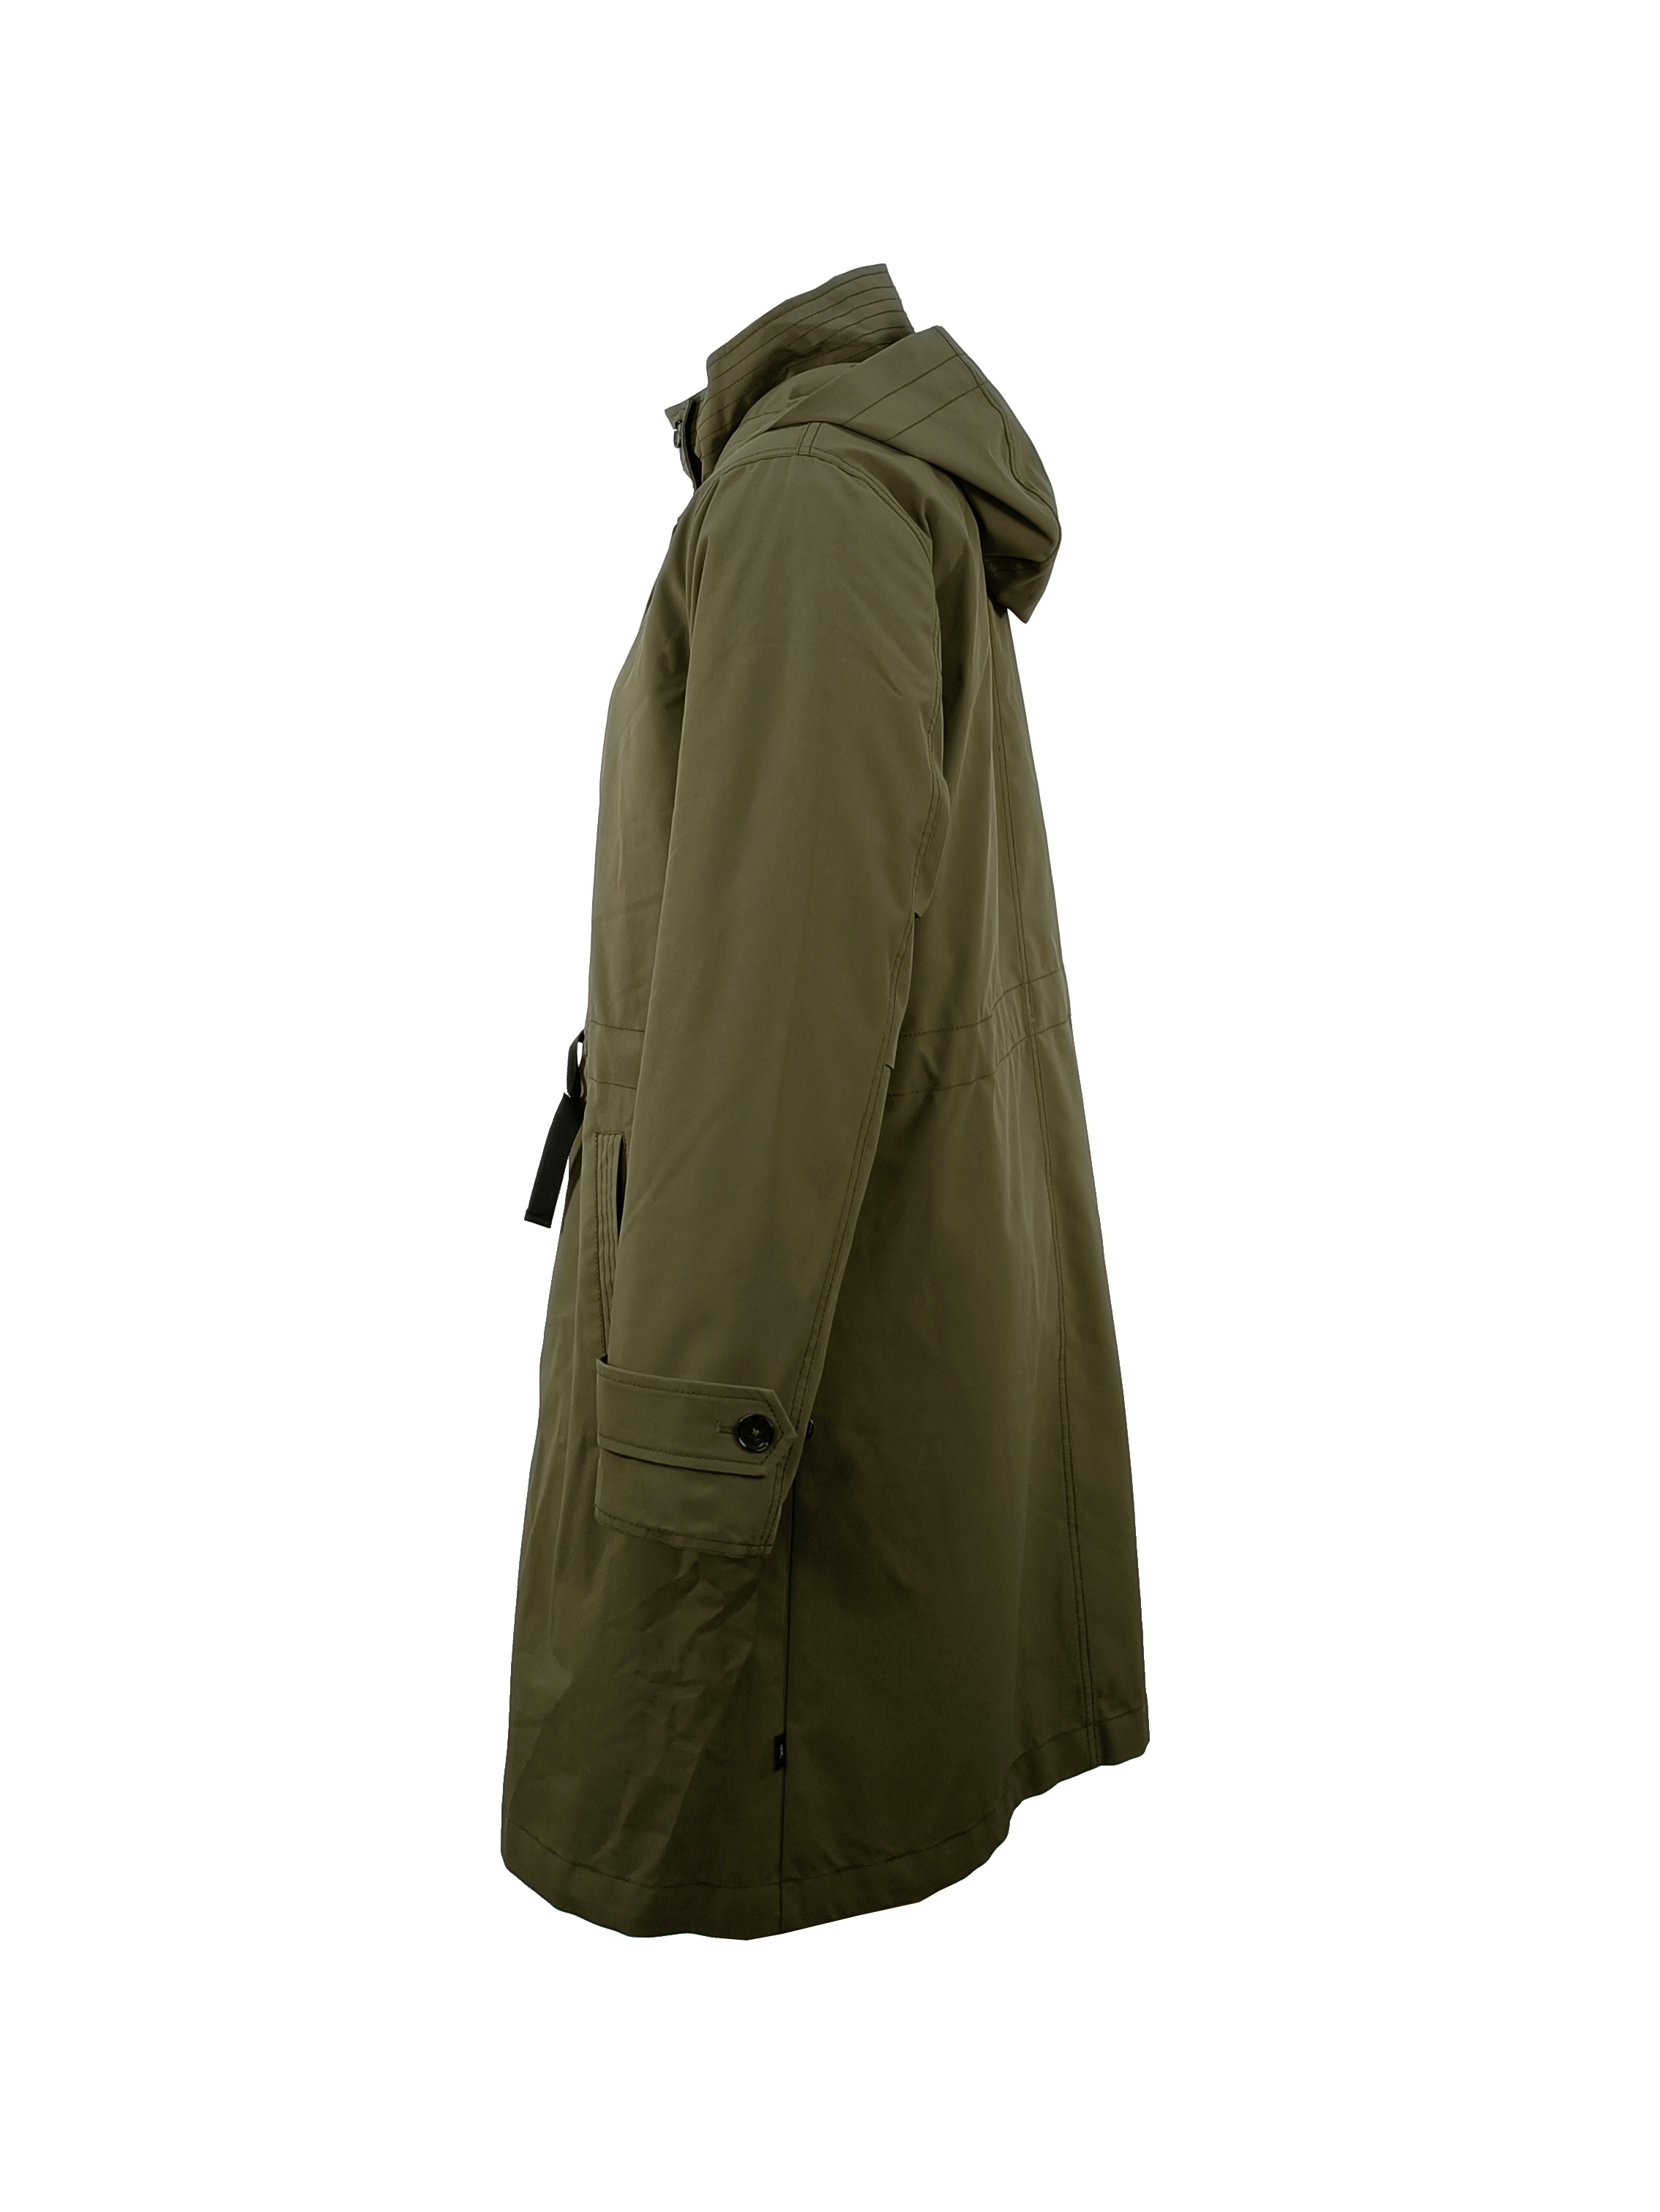 4.padded jacket (3)